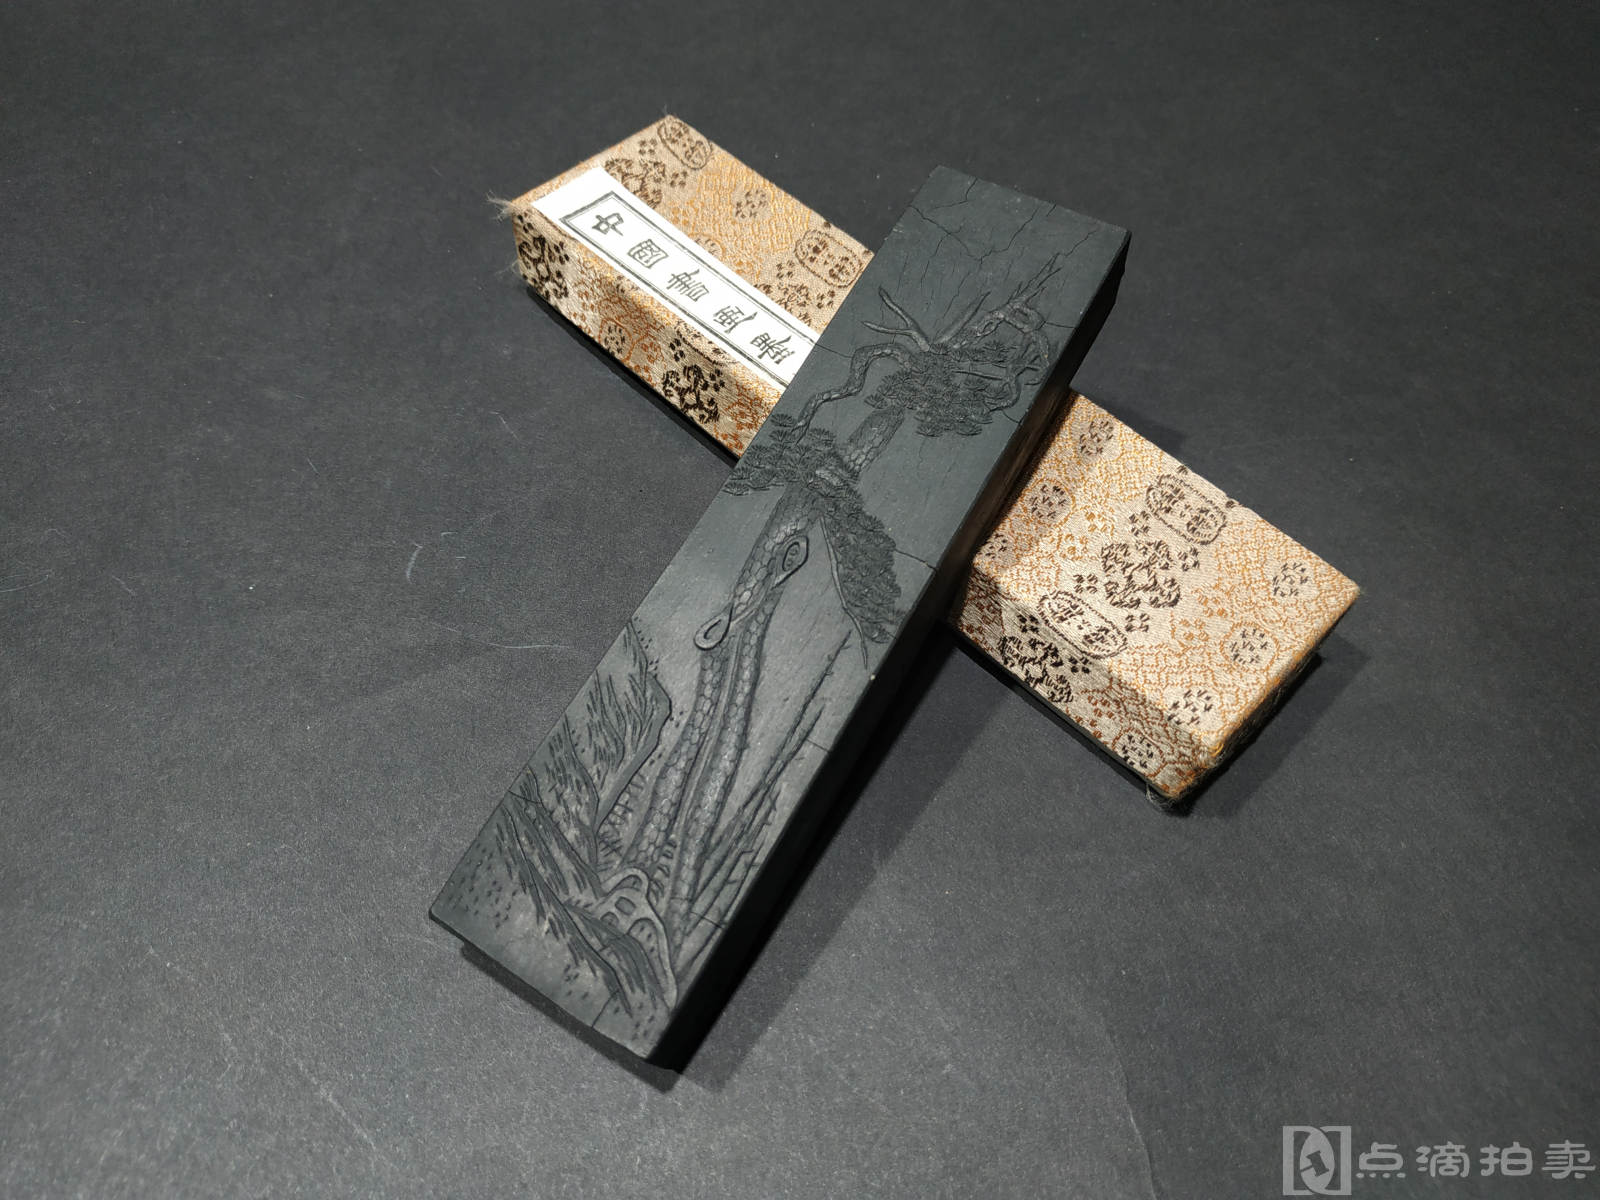 LOT13 上海墨厂中国书画墨《黄山松烟》一盒一锭拍品详情-点滴拍卖-古籍